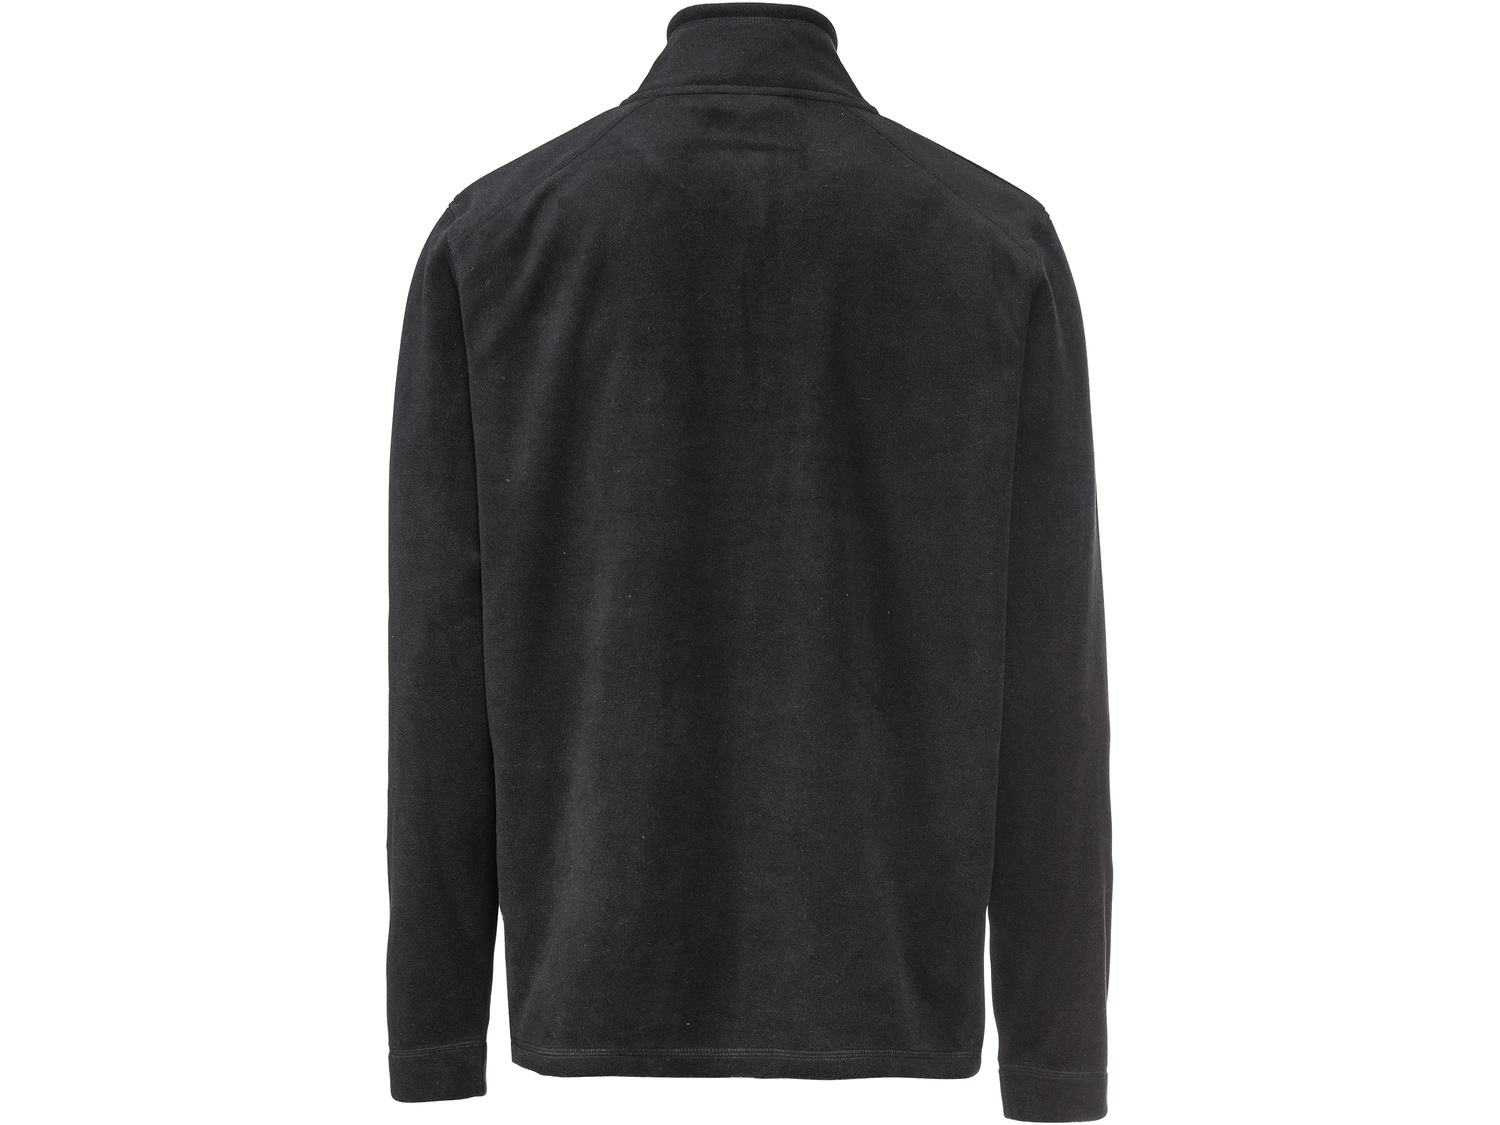 Bluza z polaru Parkside, cena 49,99 PLN 
- rozmiary: M-XL
- kaptur lub kołnierz ...